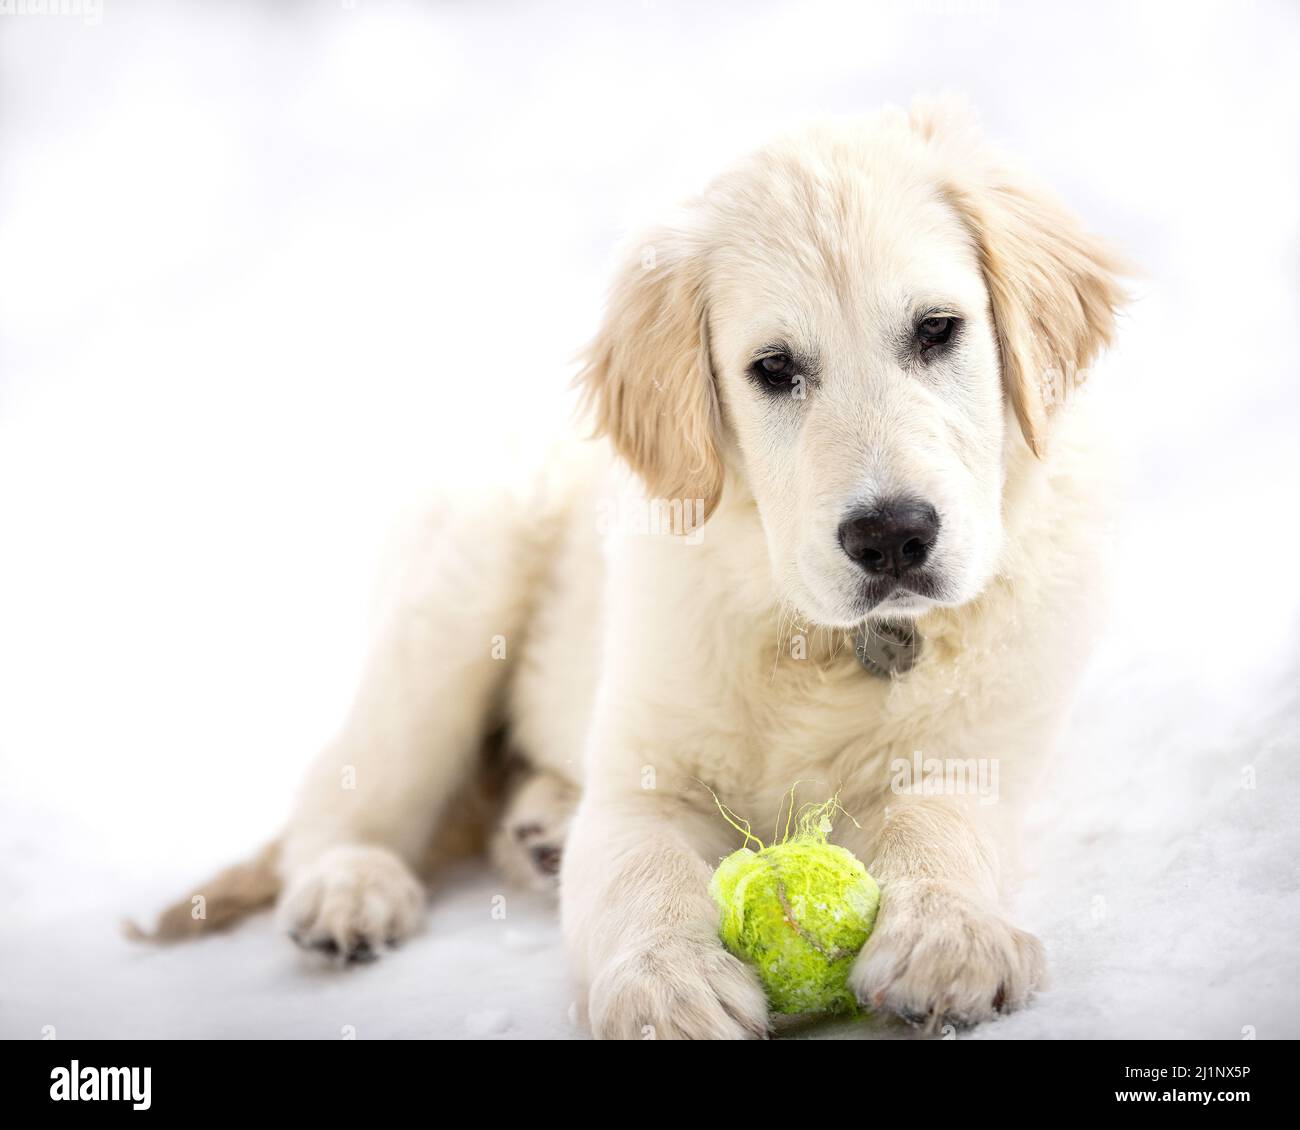 An English Cream Golden Retriever puppy in snow. Stock Photo